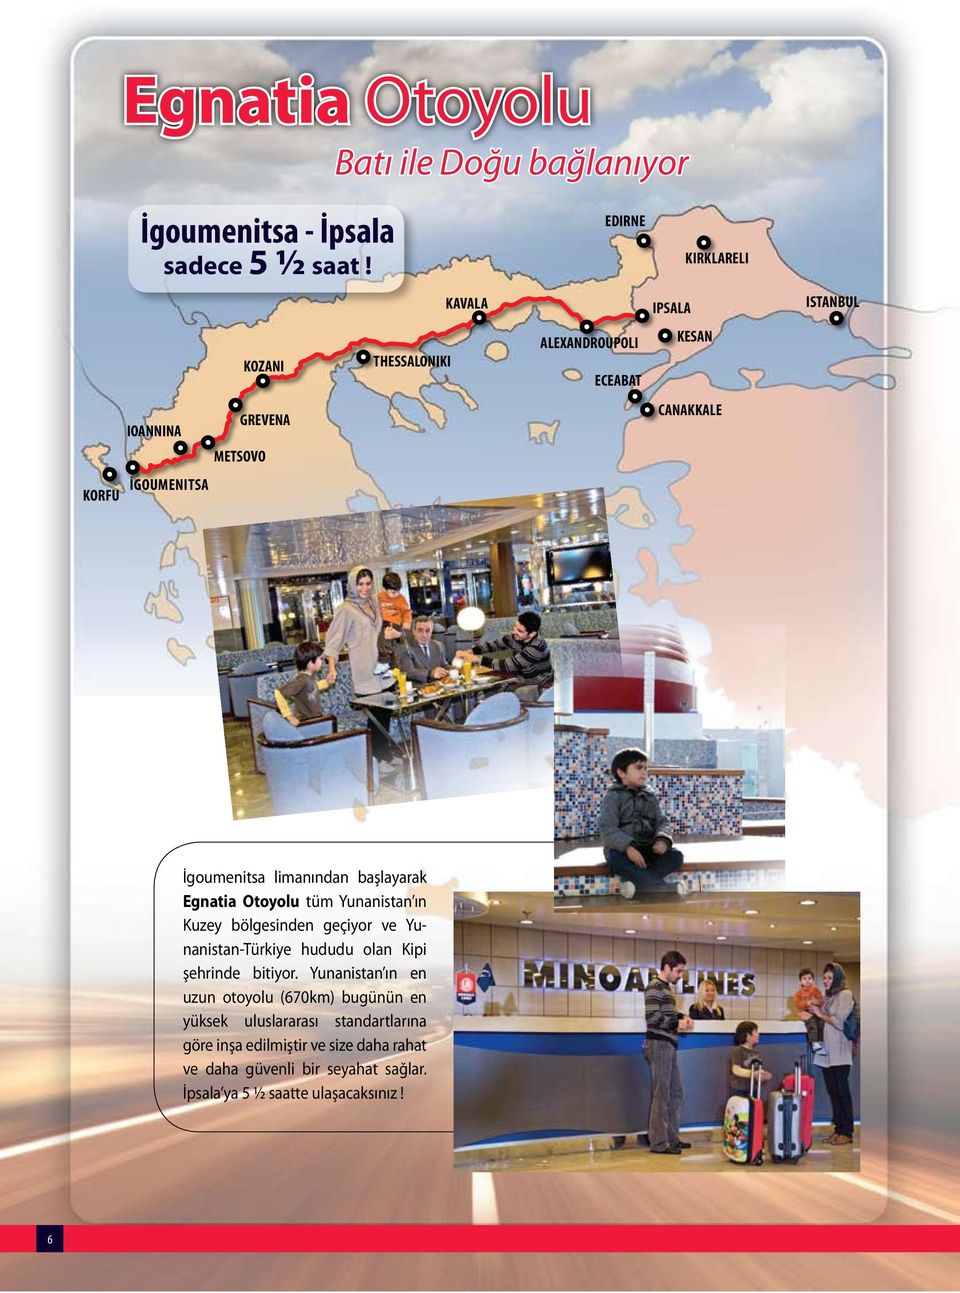 İgoumenitsa limanından başlayarak Egnatia Otoyolu tüm Yunanistan ın Kuzey bölgesinden geçiyor ve Yunanistan-Türkiye hududu olan Kipi şehrinde